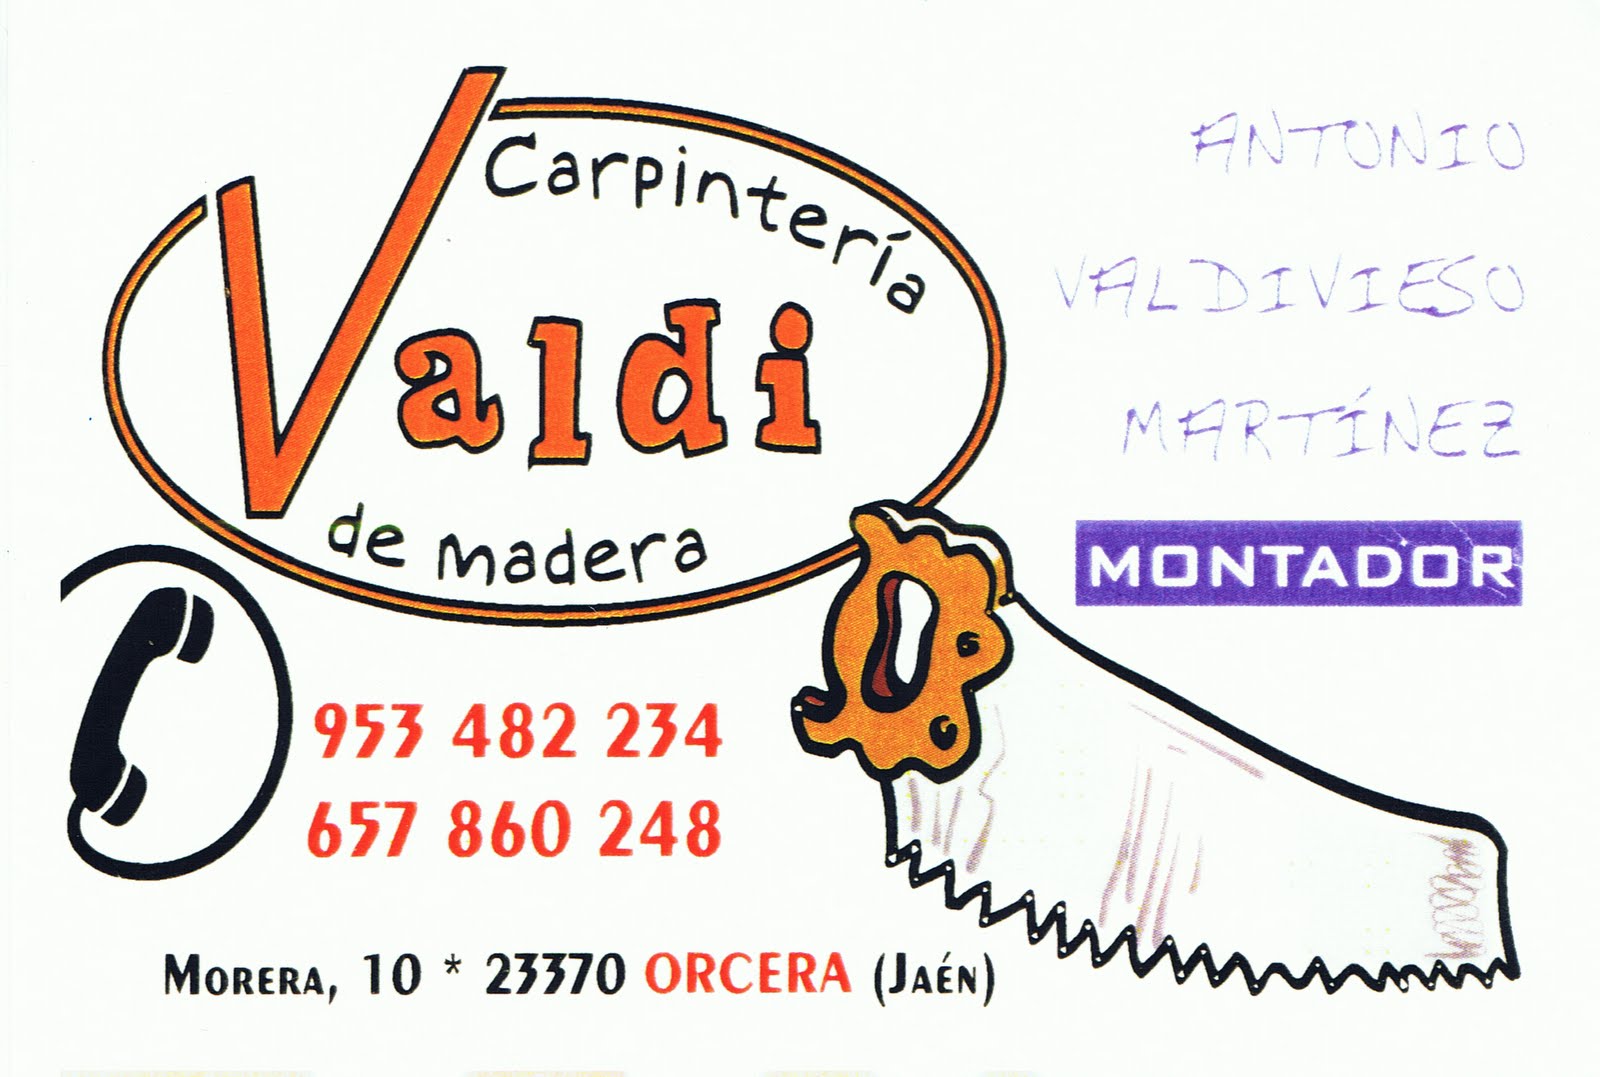 Carpintería Valdivieso (Orcera-Jaén)